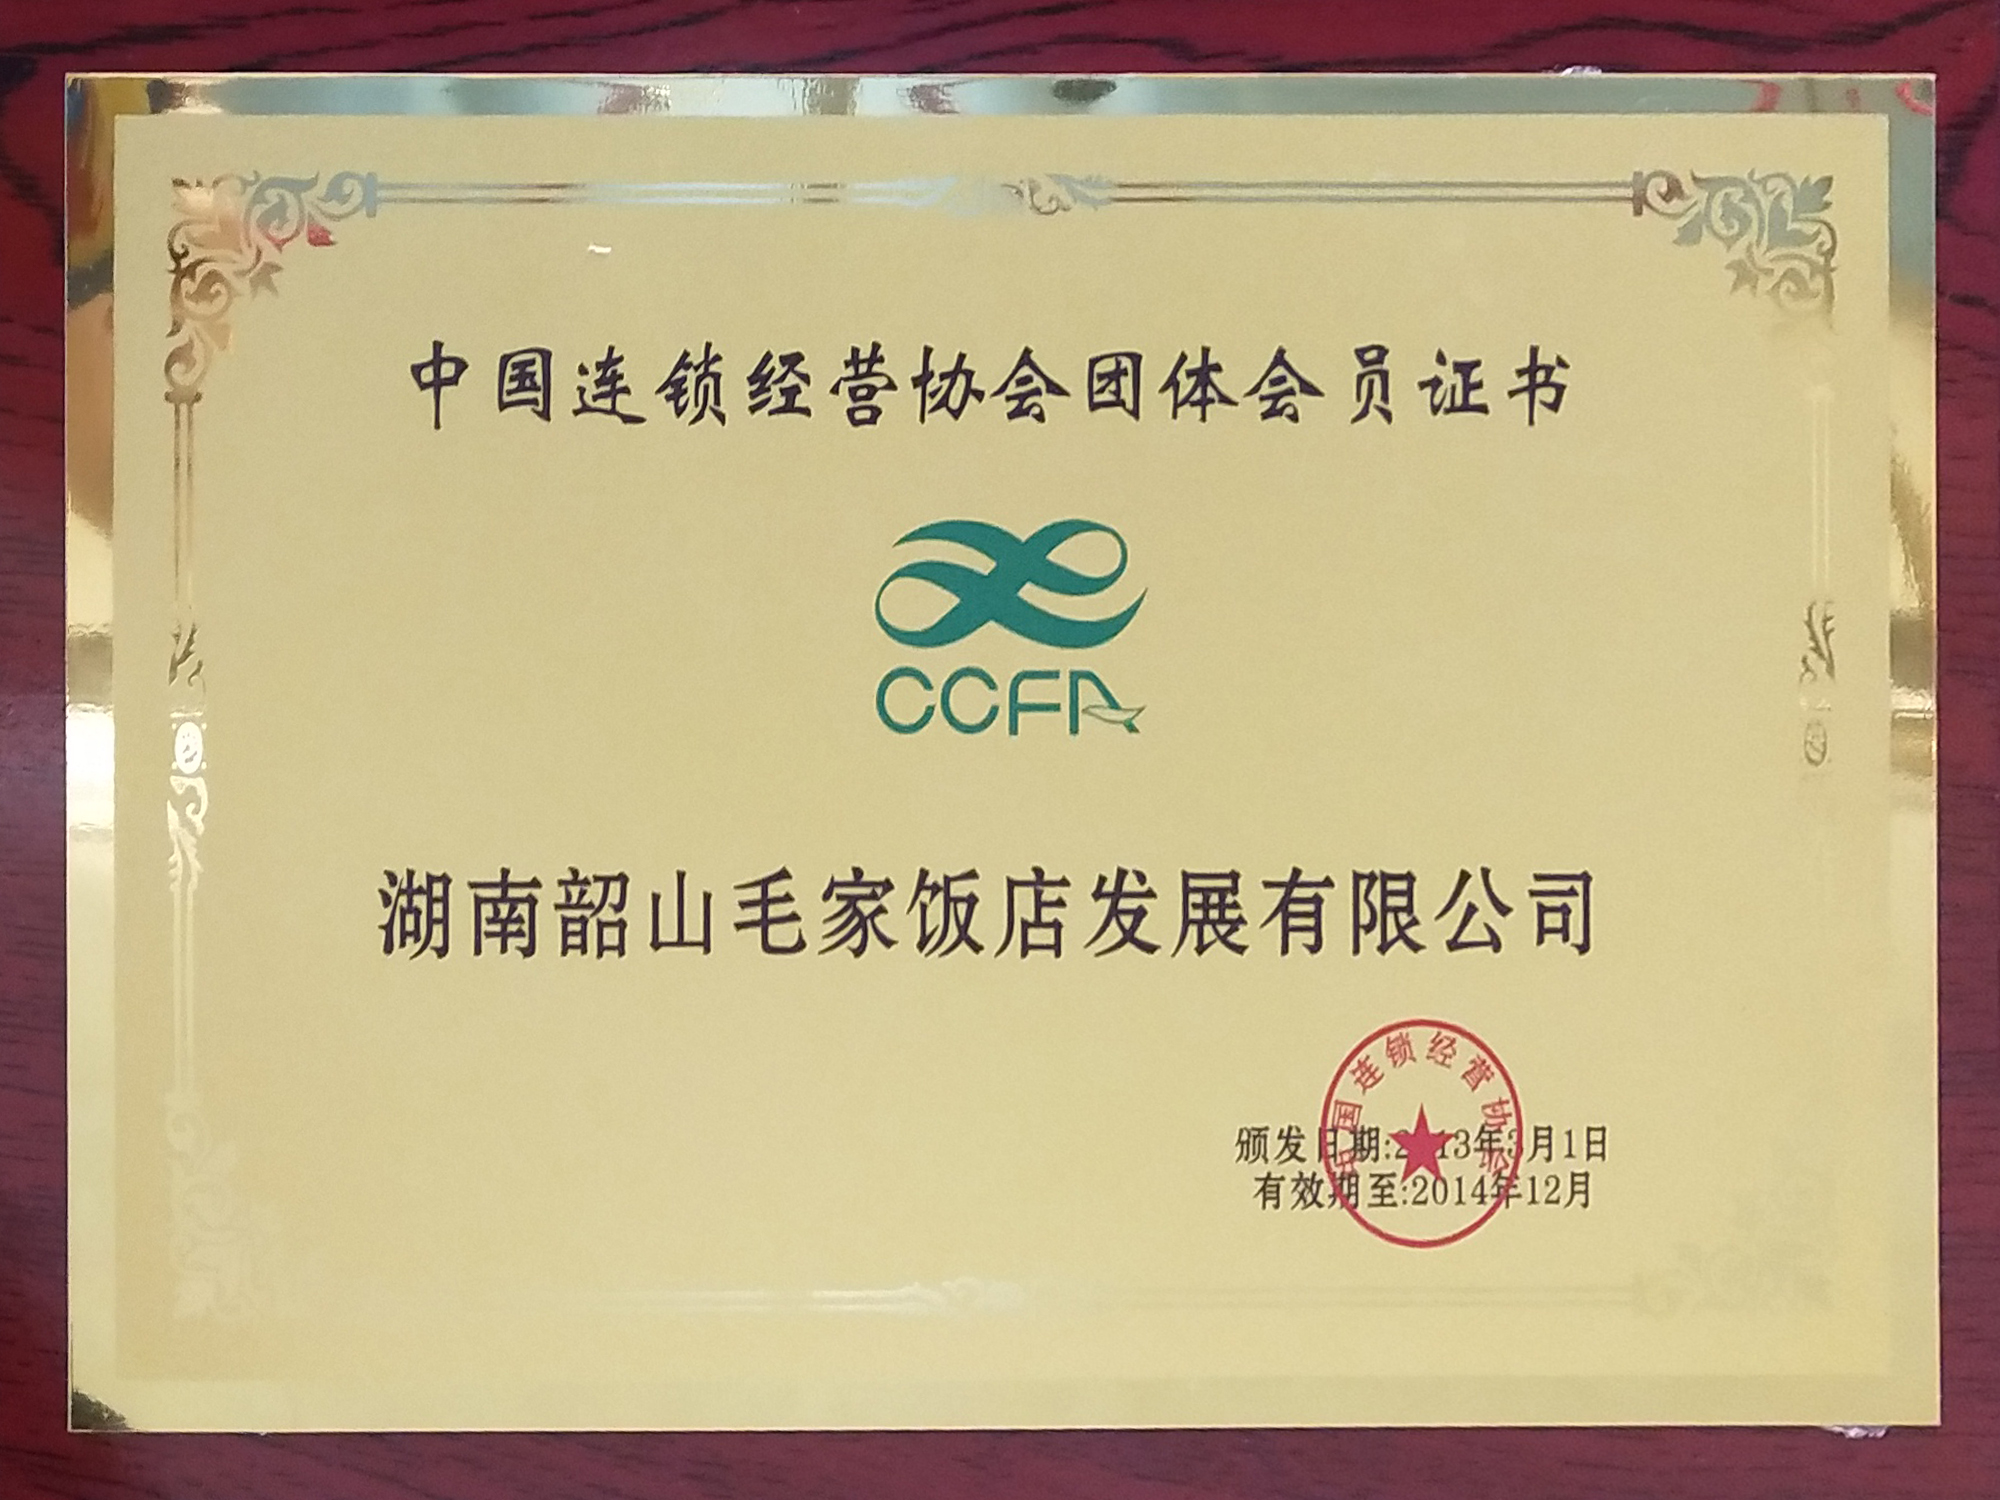 中国连锁经营协会团体会员证书